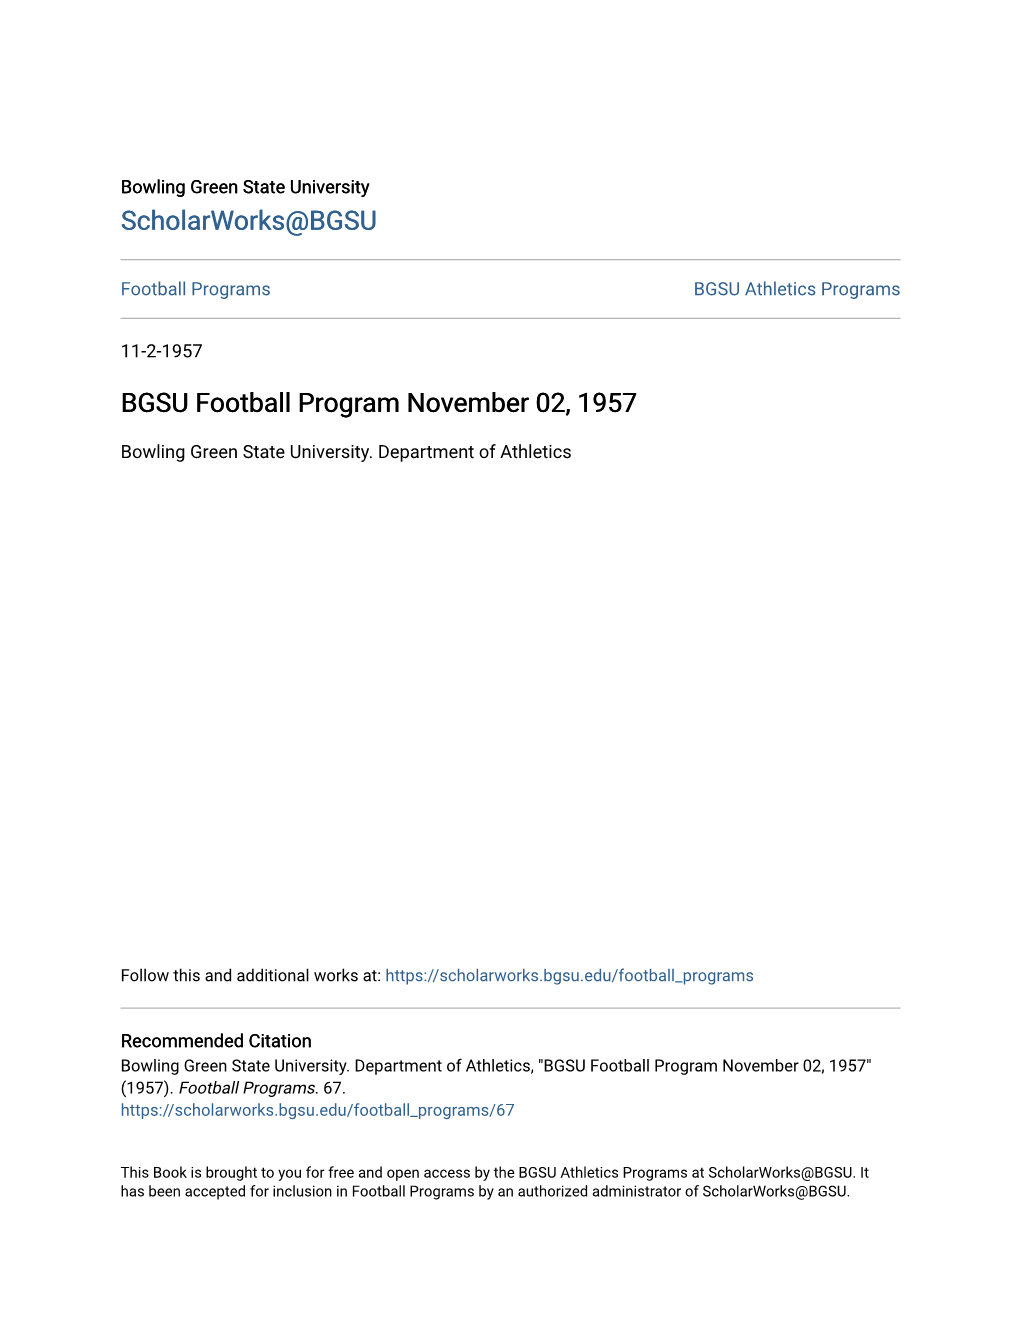 BGSU Football Program November 02, 1957